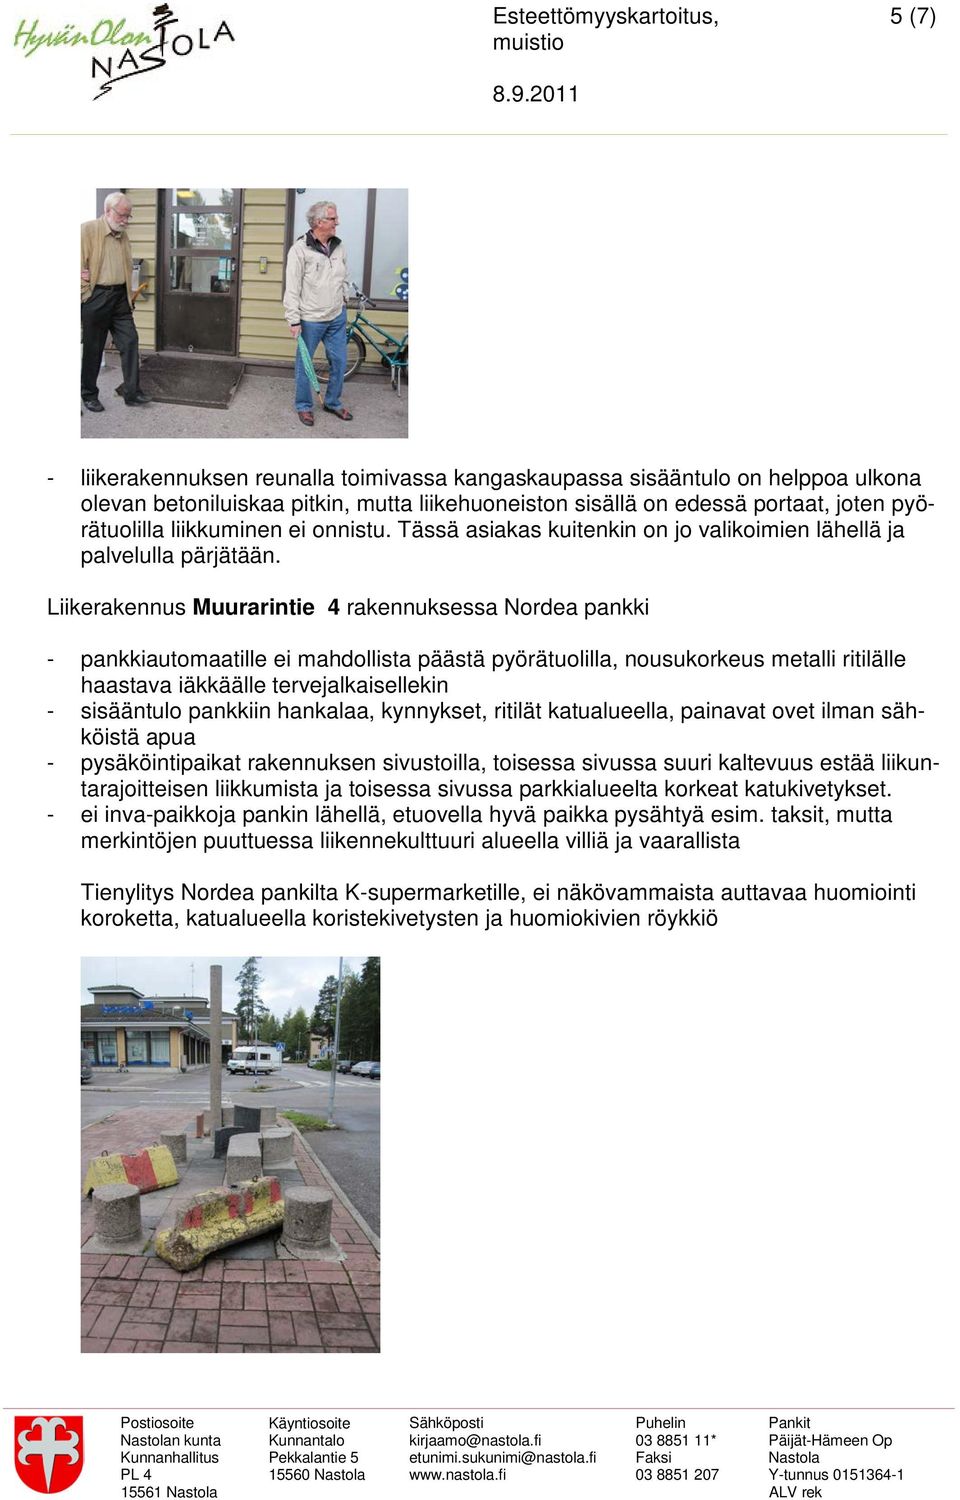 Liikerakennus Muurarintie 4 rakennuksessa Nordea pankki - pankkiautomaatille ei mahdollista päästä pyörätuolilla, nousukorkeus metalli ritilälle haastava iäkkäälle tervejalkaisellekin - sisääntulo